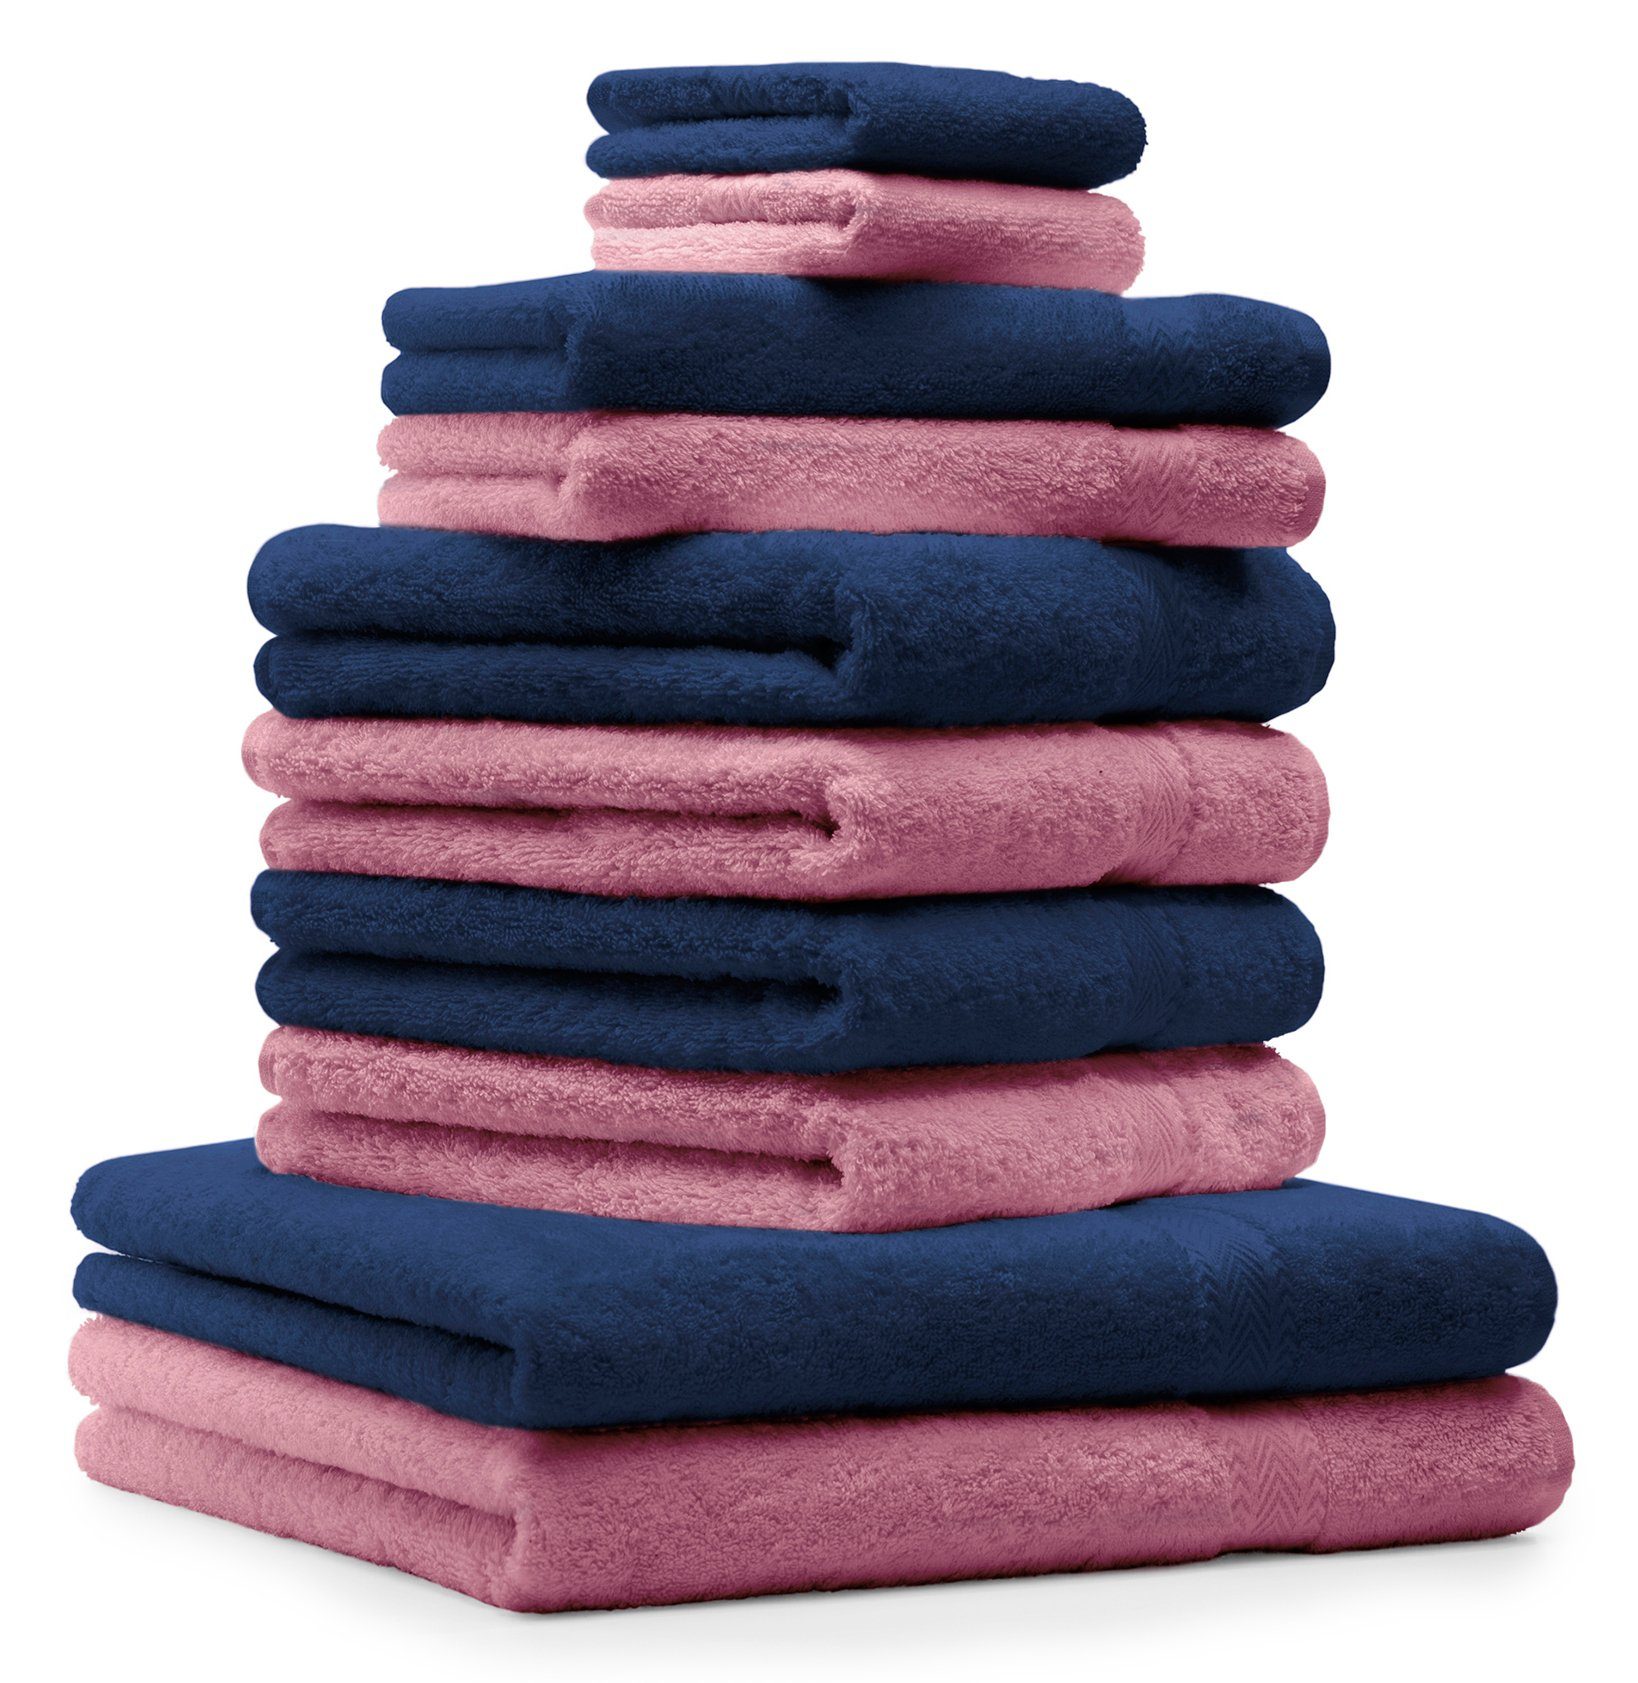 Betz Handtuch Set 10-TLG. Handtücher-Set Classic Farbe dunkelblau und altrosa, 100% Baumwolle | Handtuch-Sets